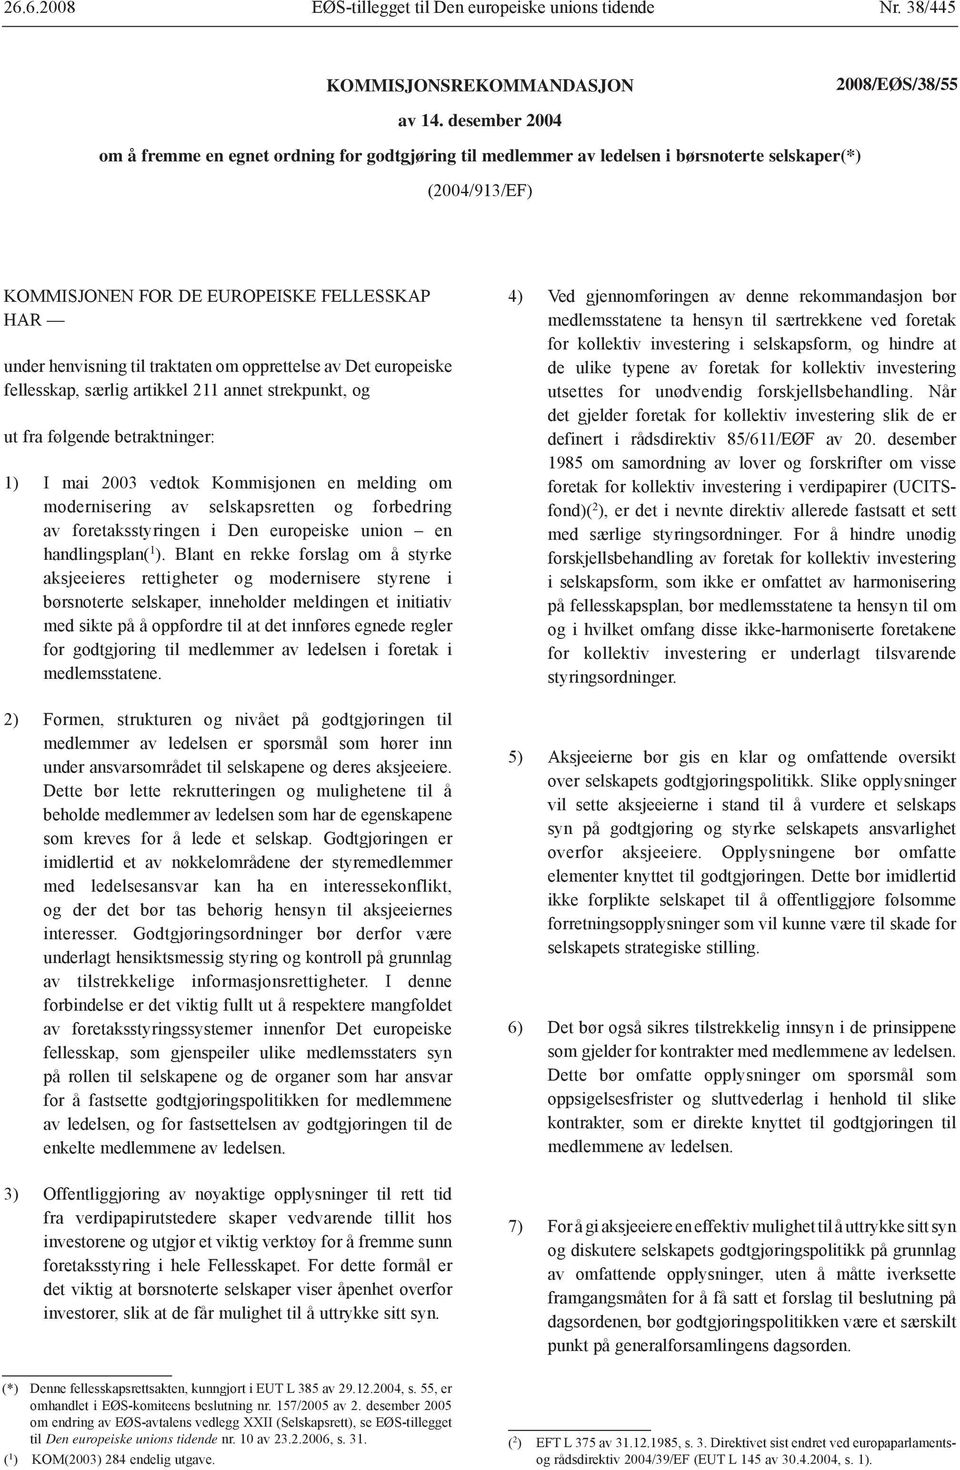 traktaten om opprettelse av Det europeiske fellesskap, særlig artikkel 211 annet strekpunkt, og ut fra følgende betraktninger: 1) I mai 2003 vedtok Kommisjonen en melding om modernisering av